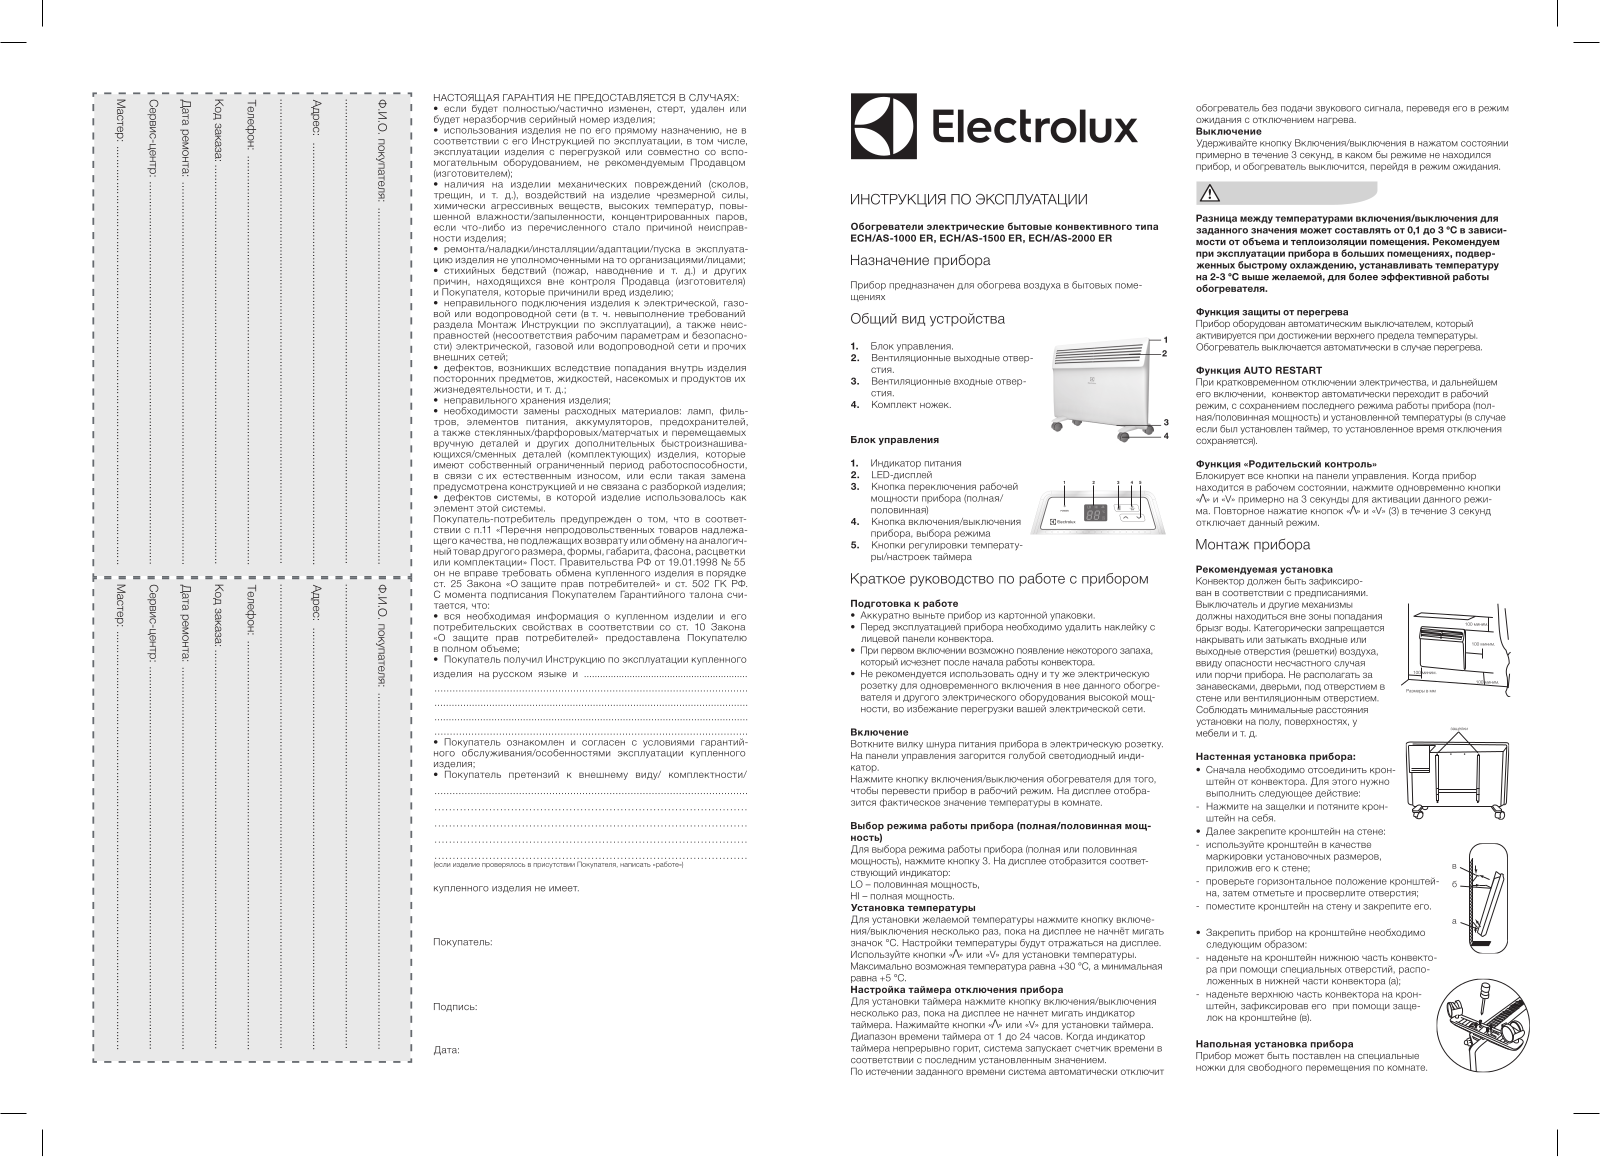 Electrolux ECH/AS-2000 User Manual